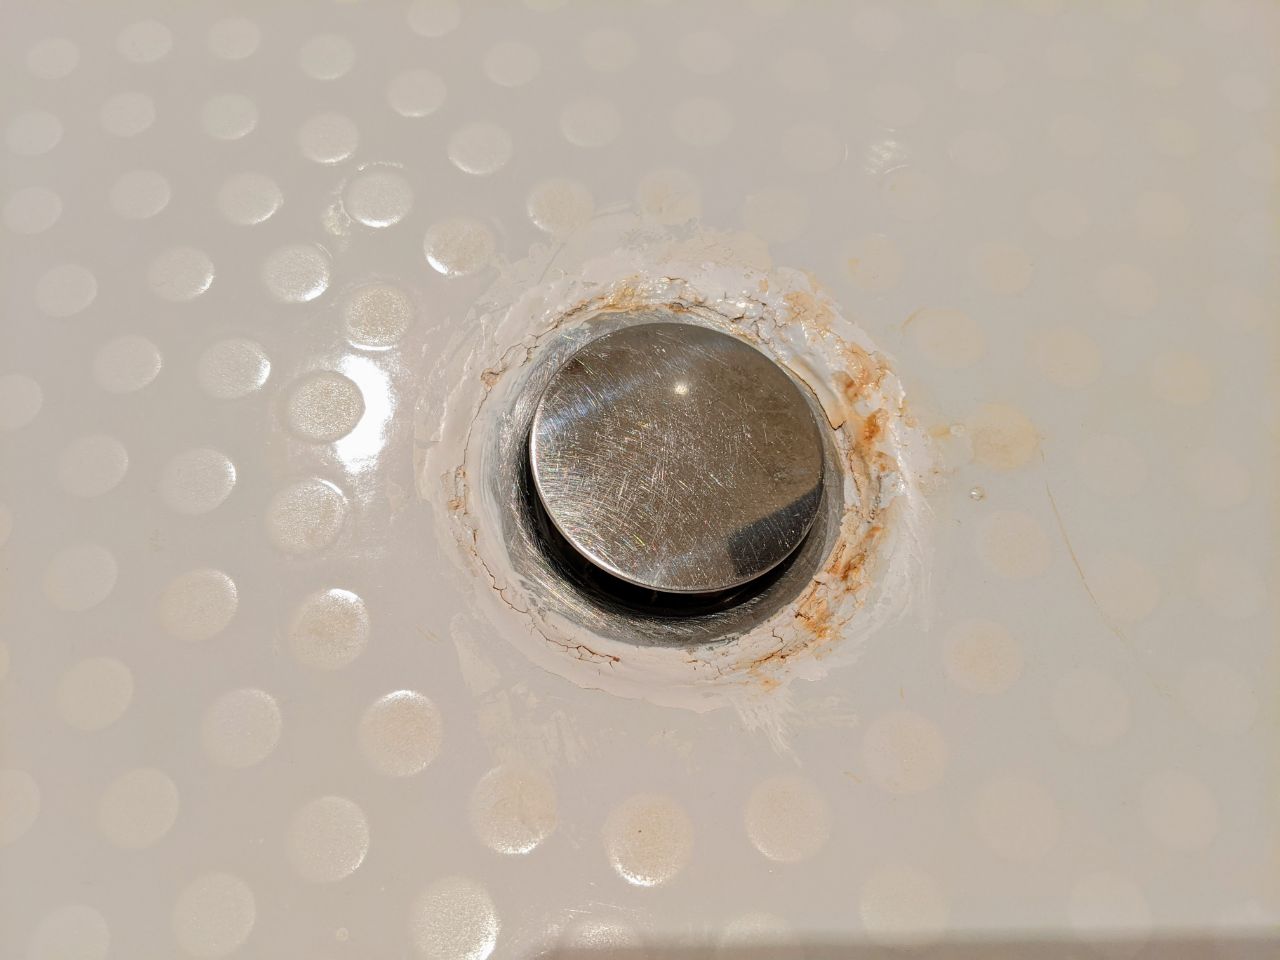 Rust ring in bathtub